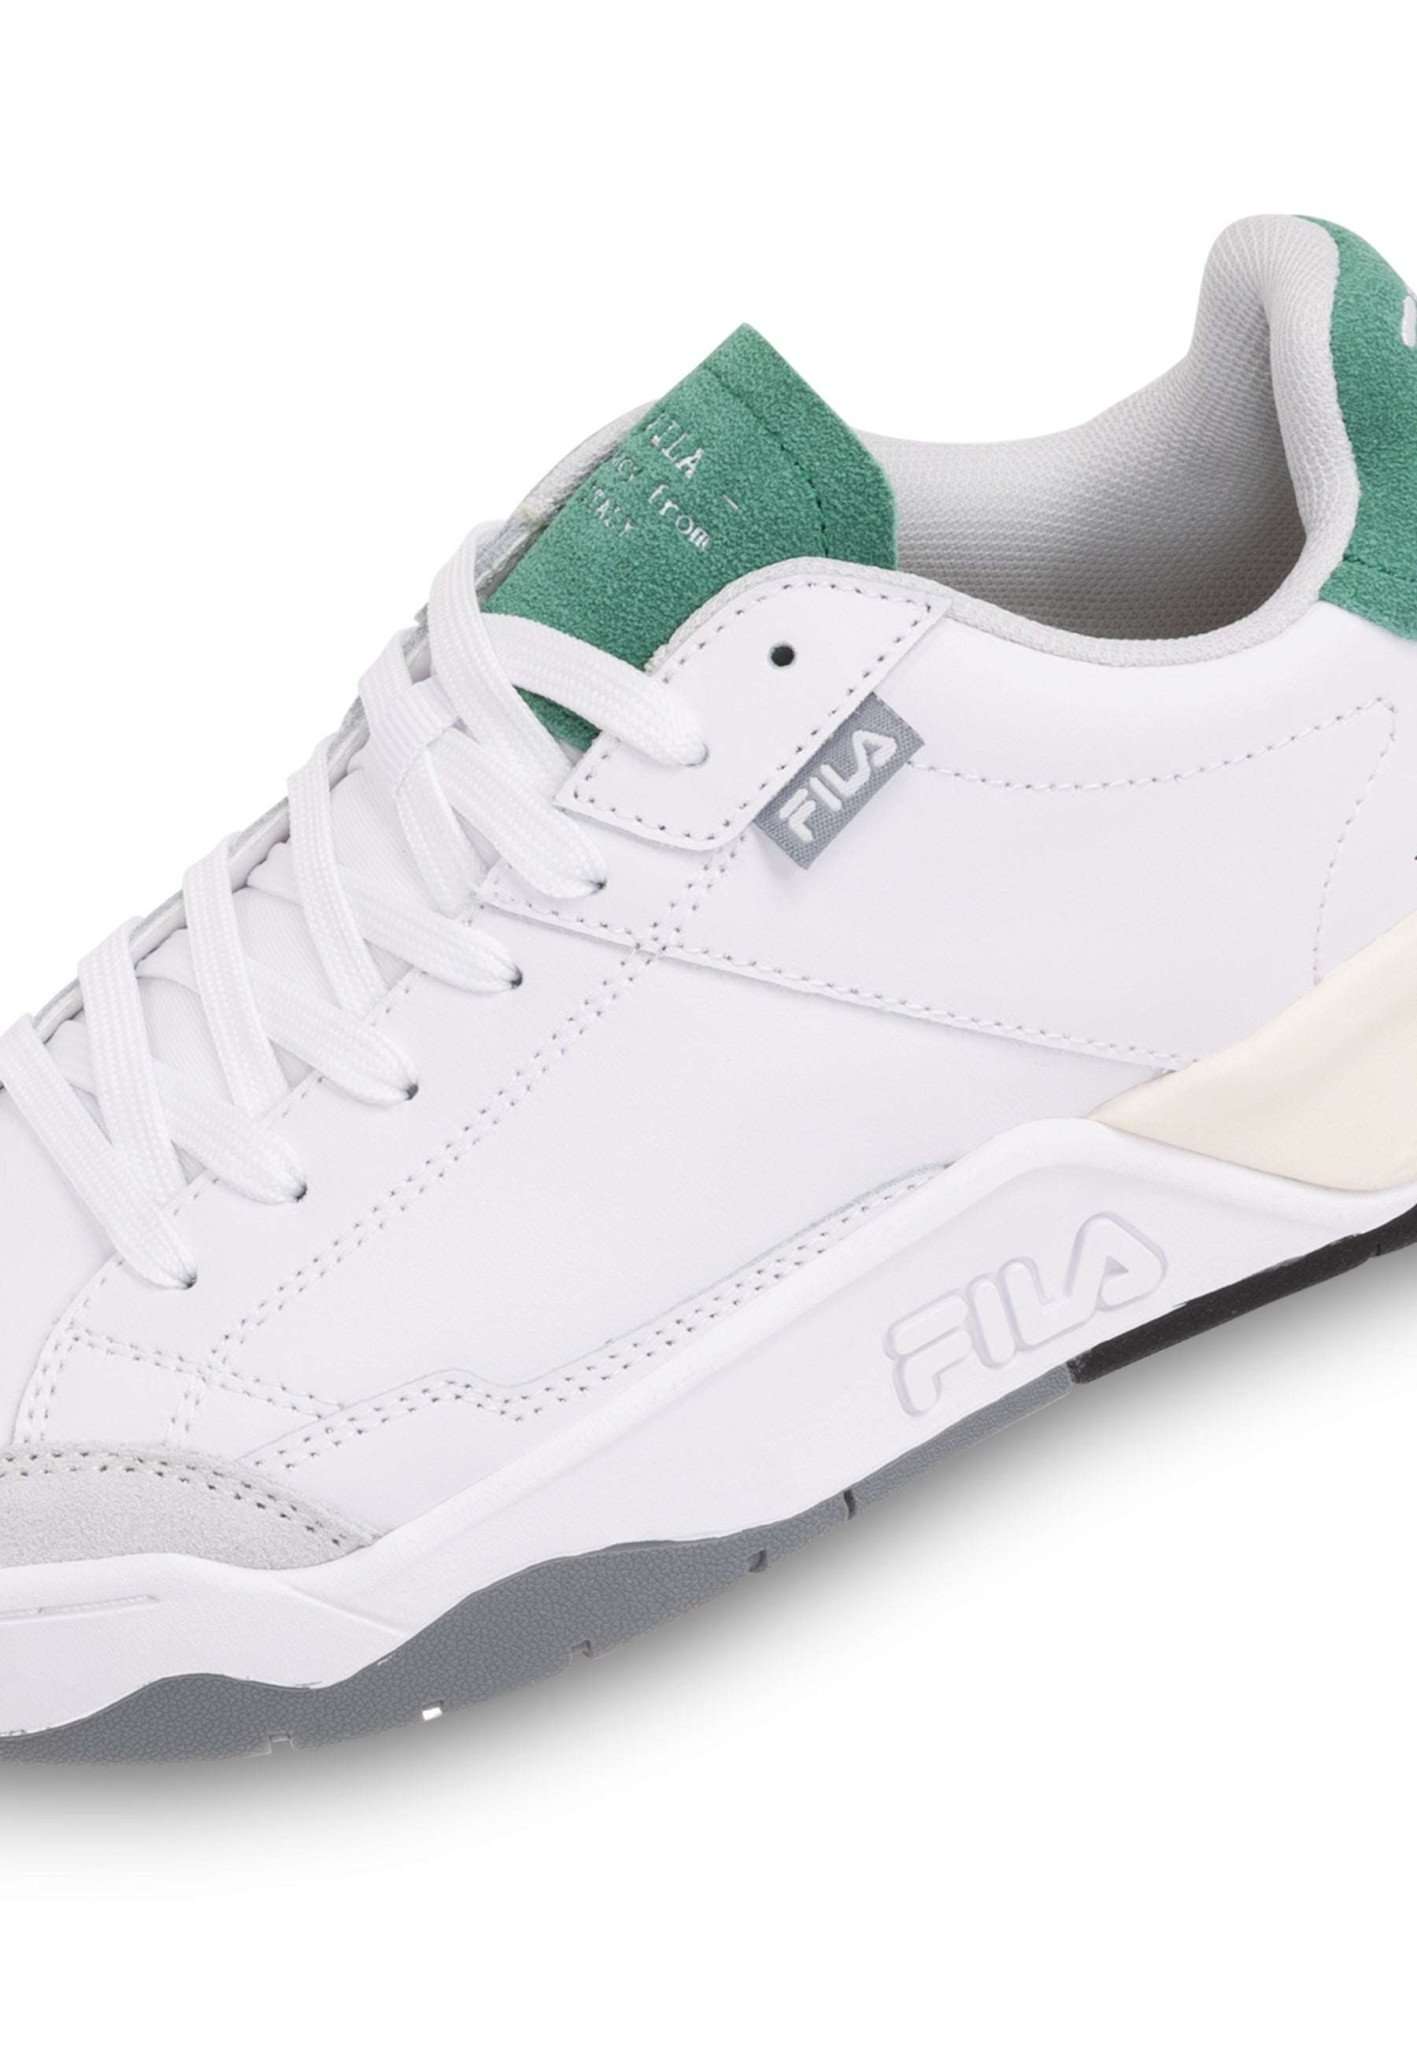 Fila Avenida in White-Verdant Green Sneakers Fila   